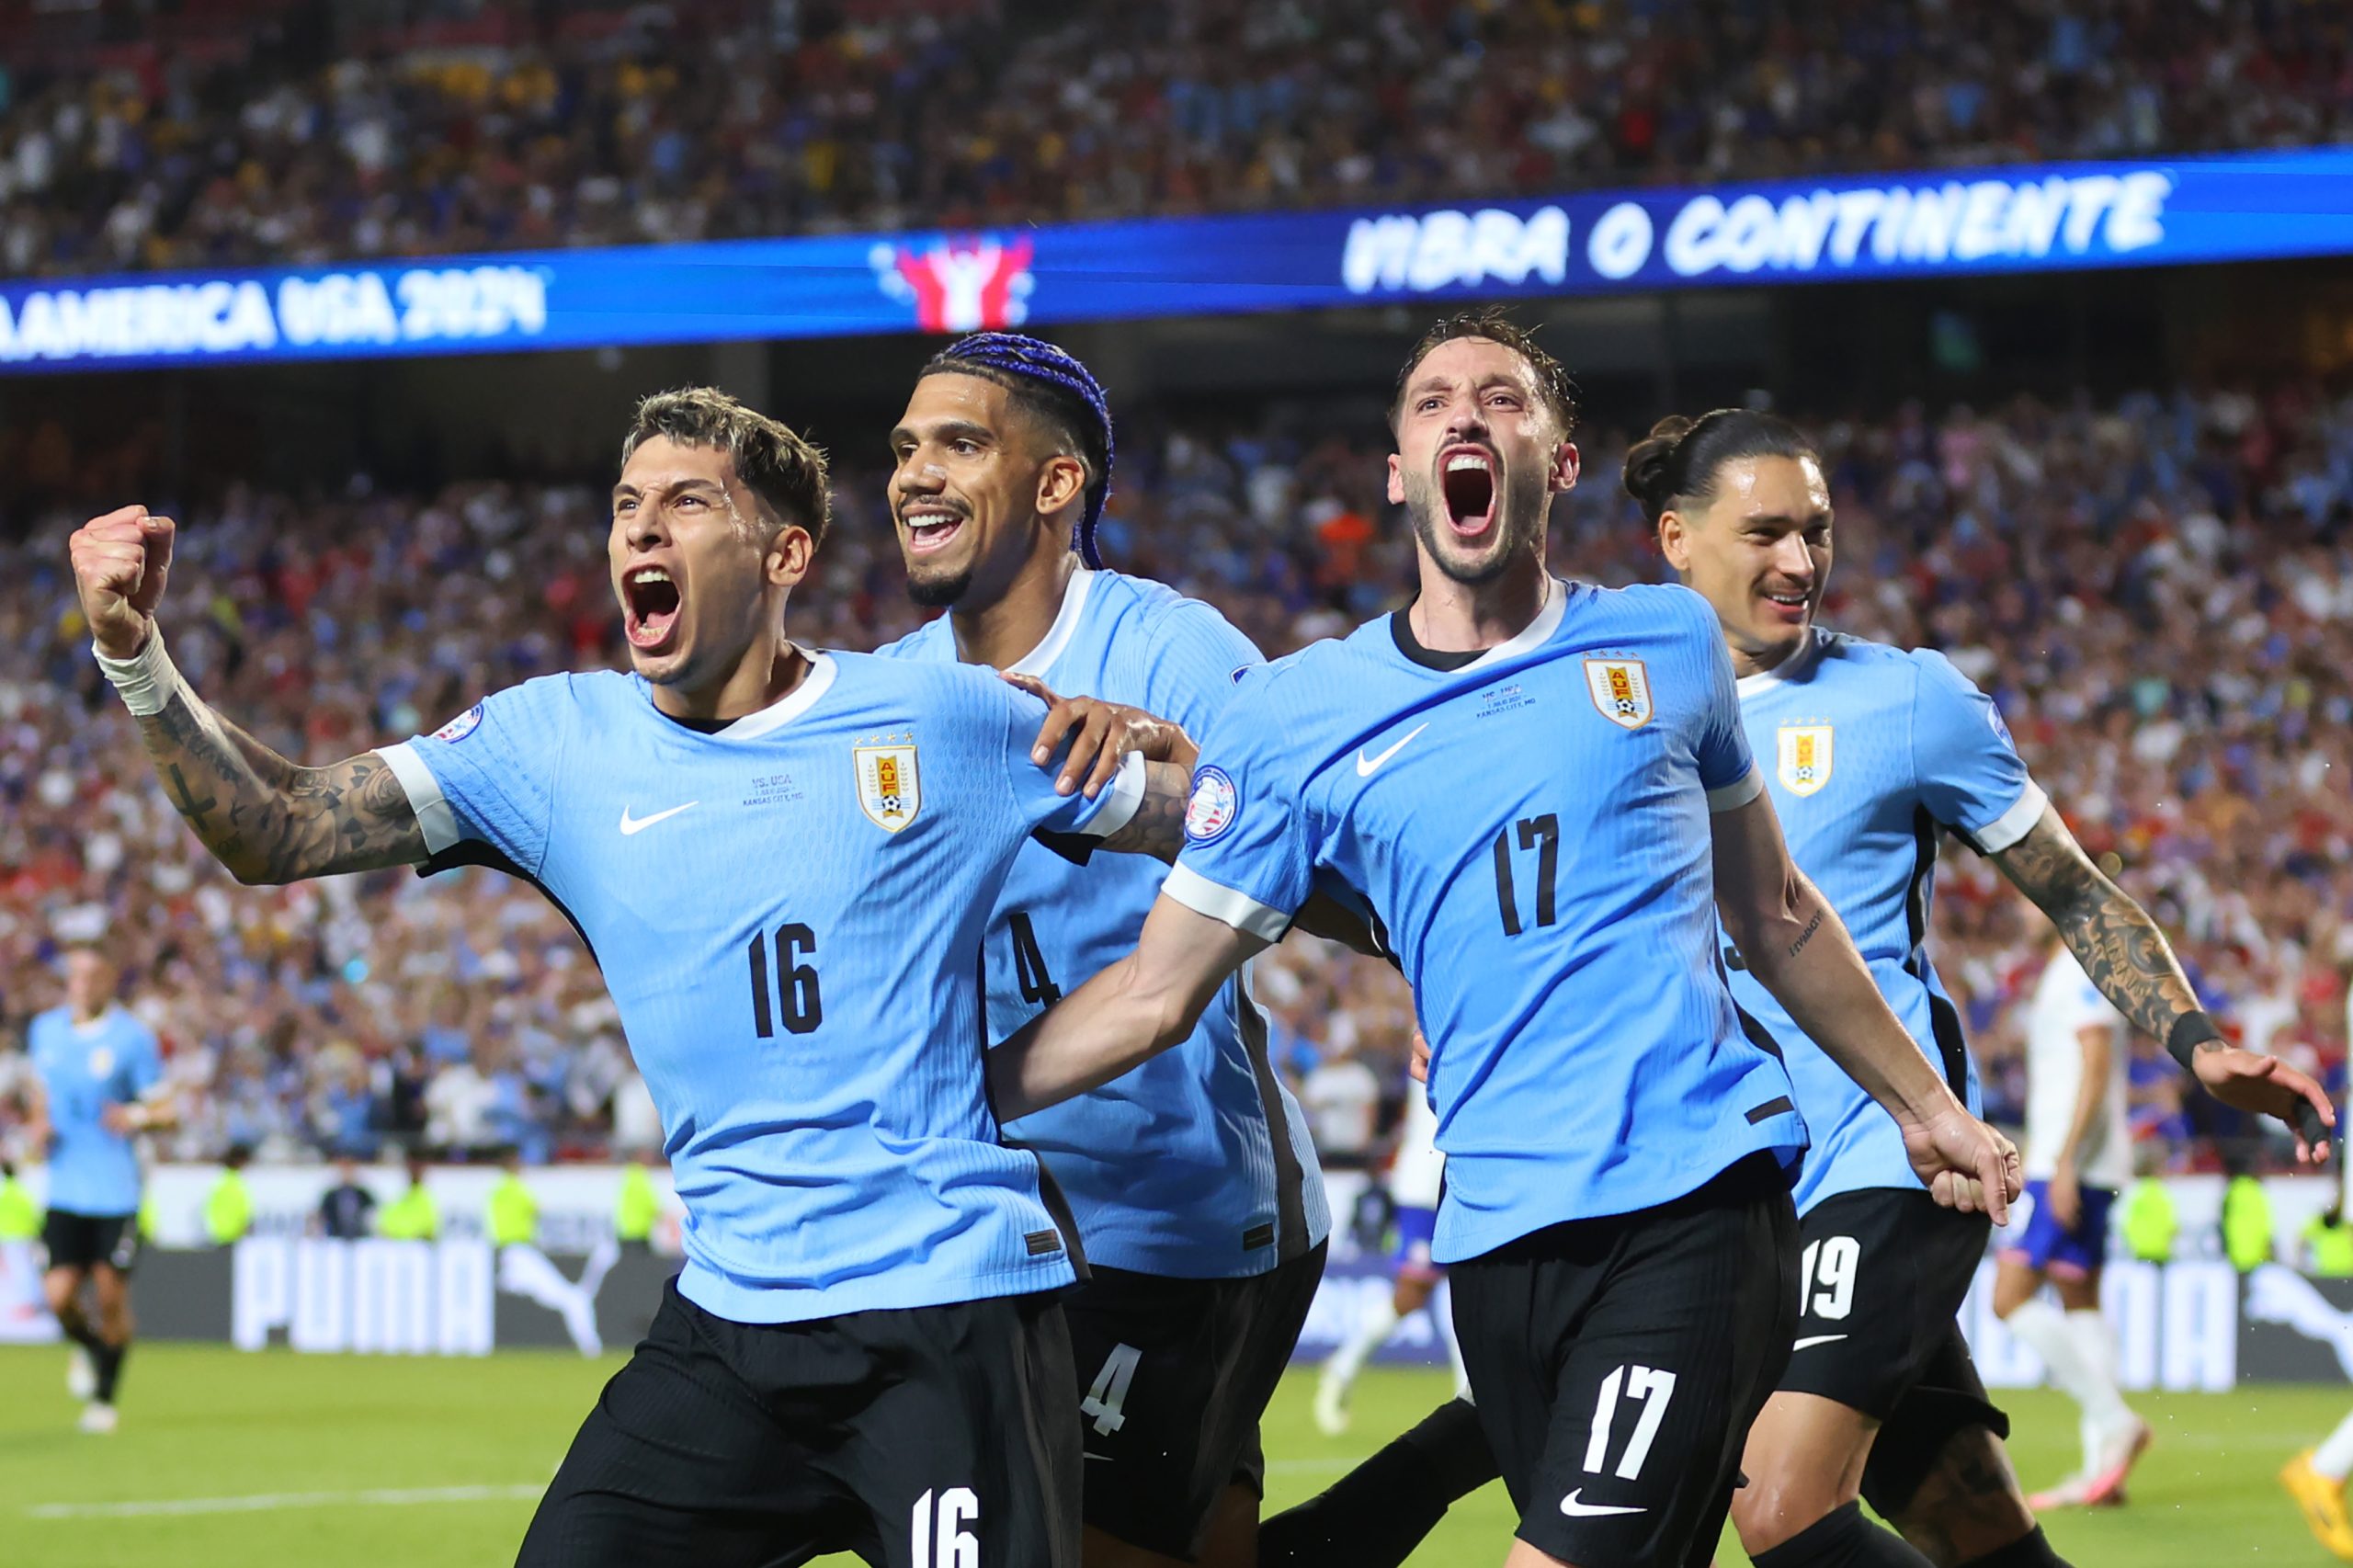 Seleção Uruguaia comemorando gol na partida contra o Estados Unidos. (Photo by Michael Reaves/Getty Images)